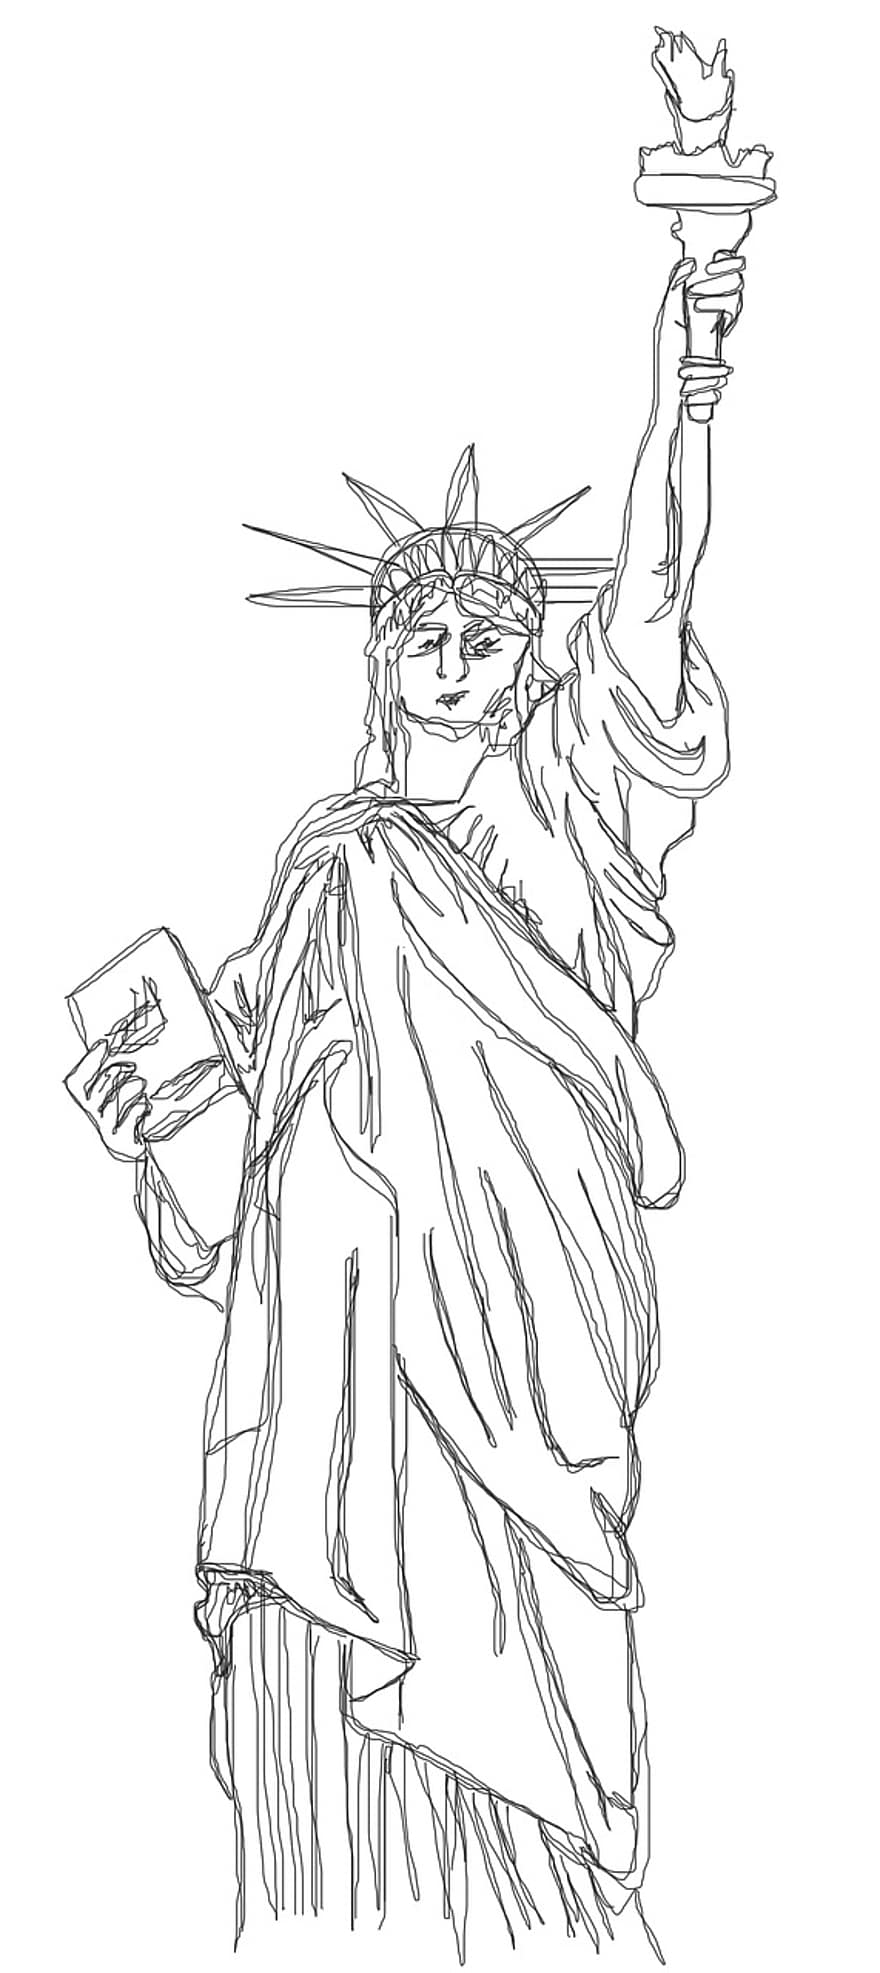 socha svobody, Amerika, New York, socha, dom, symbol, u s, výška, pochodeň, čmáranice, výkres